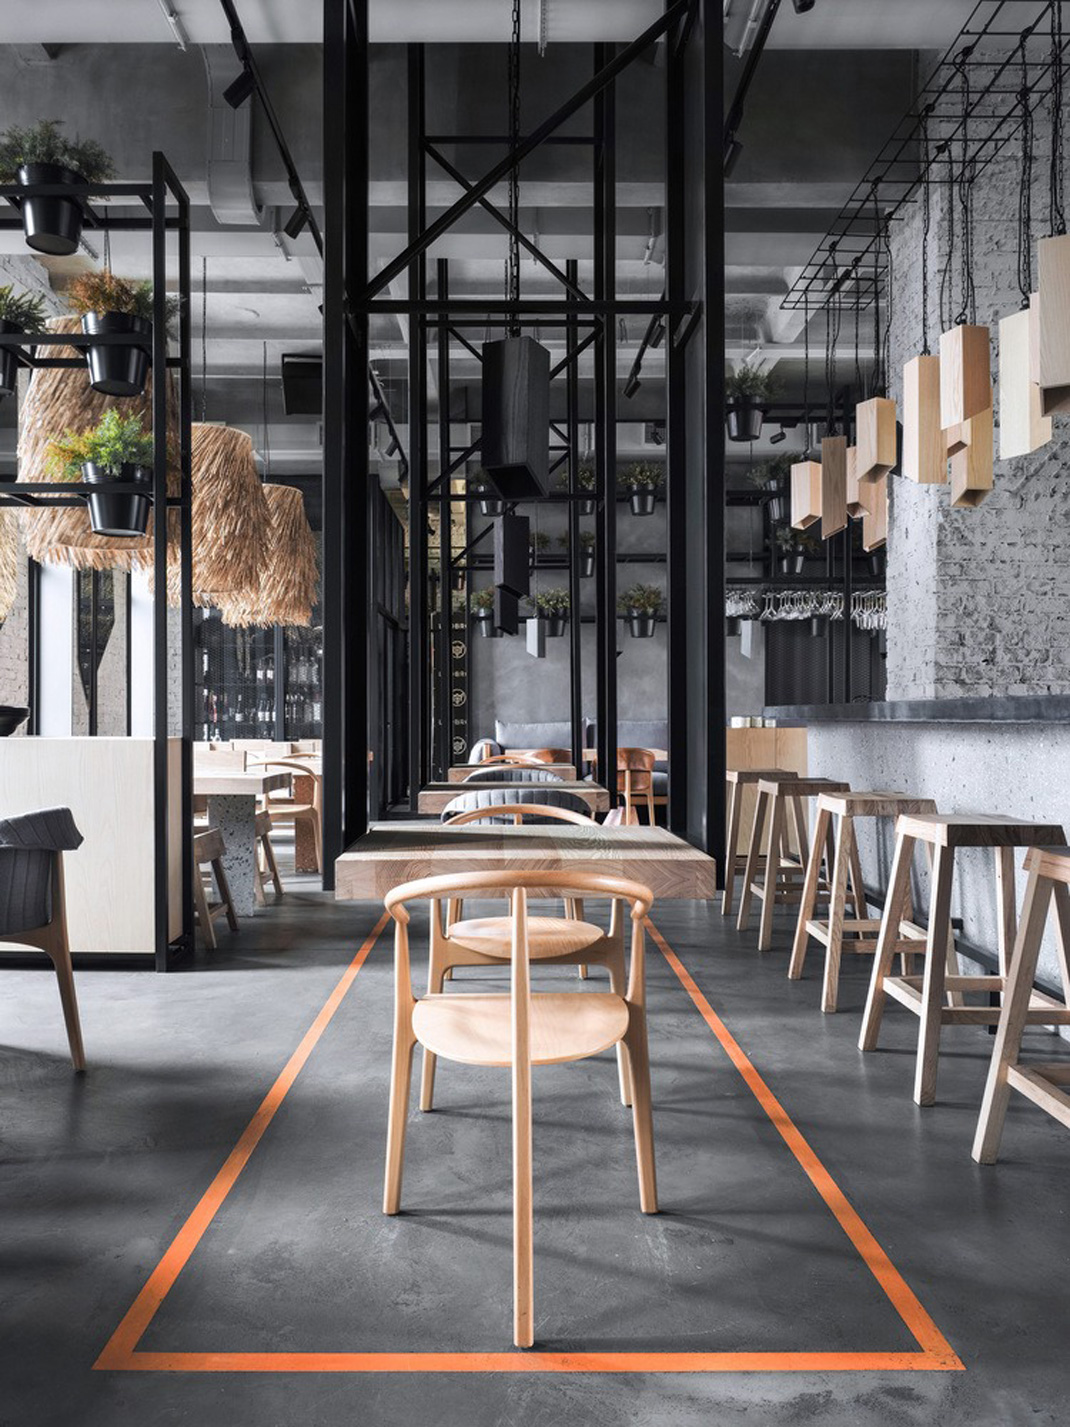 国外精致餐厅空间设计 国外 餐饮空间 自然元素 工业风 logo设计 vi设计 空间设计 视觉餐饮